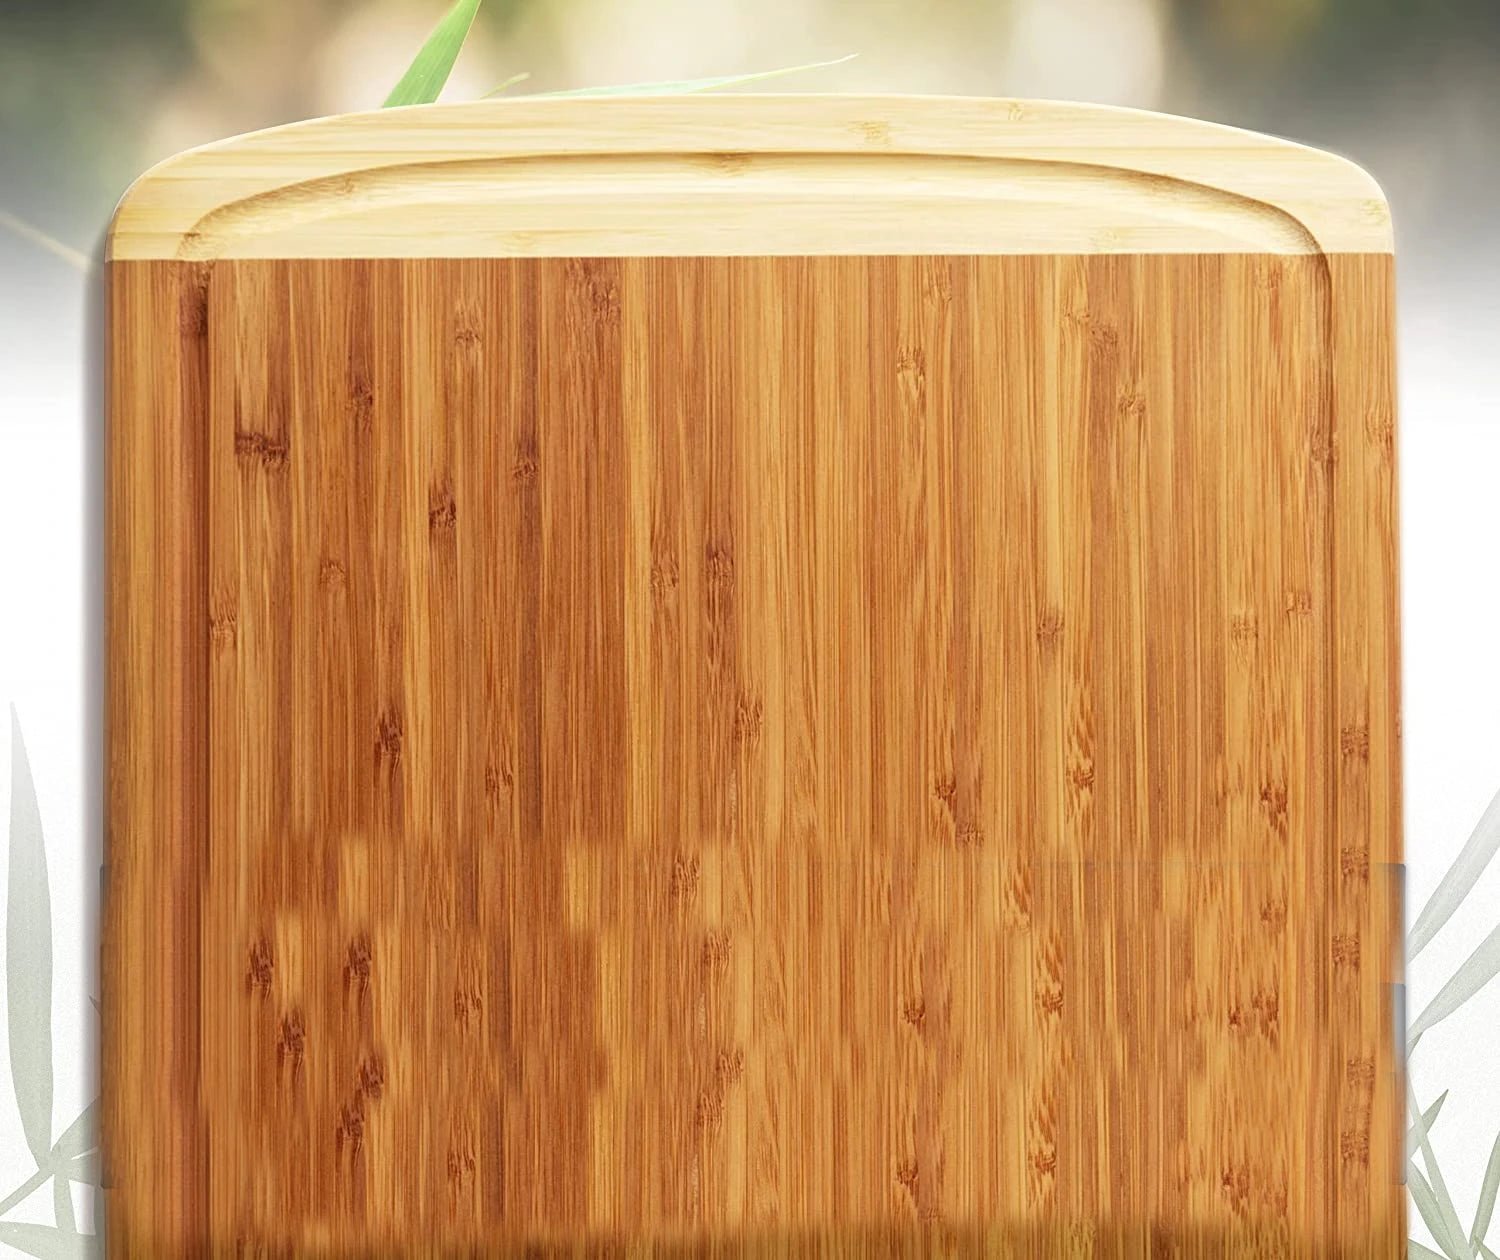 14.5"x11.5" Organic Bamboo Cutting Board - NovoBam